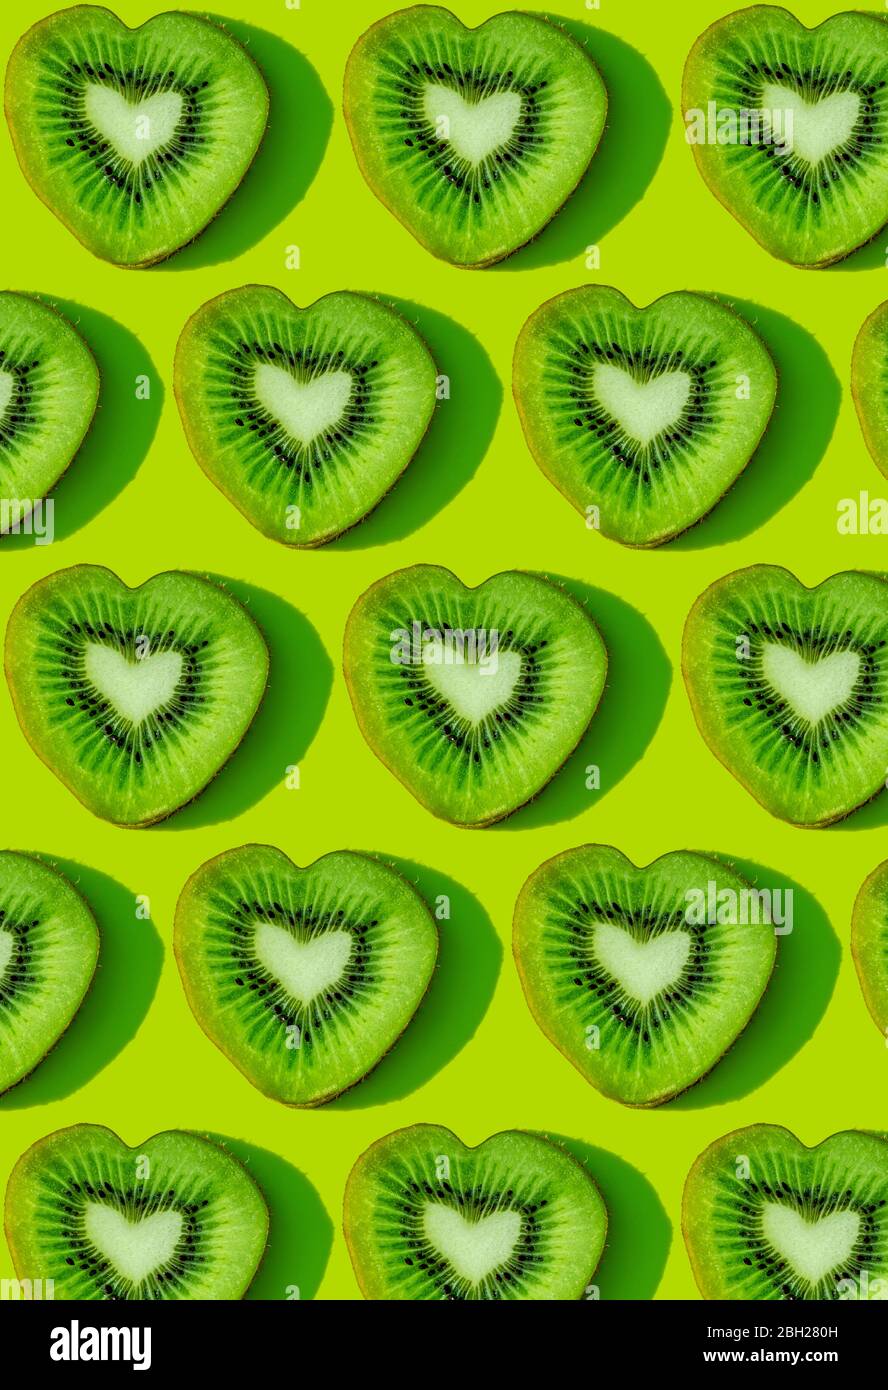 Fresh green kiwi: Trái kiwi xanh tươi là loại trái cây giàu chất dinh dưỡng và mang lại khả năng bảo vệ cơ thể tốt. Xem hình ảnh kiwi tươi ngon này sẽ giúp bạn cảm nhận được sự tươi mát và sảng khoái mà nó mang lại cho sức khỏe.